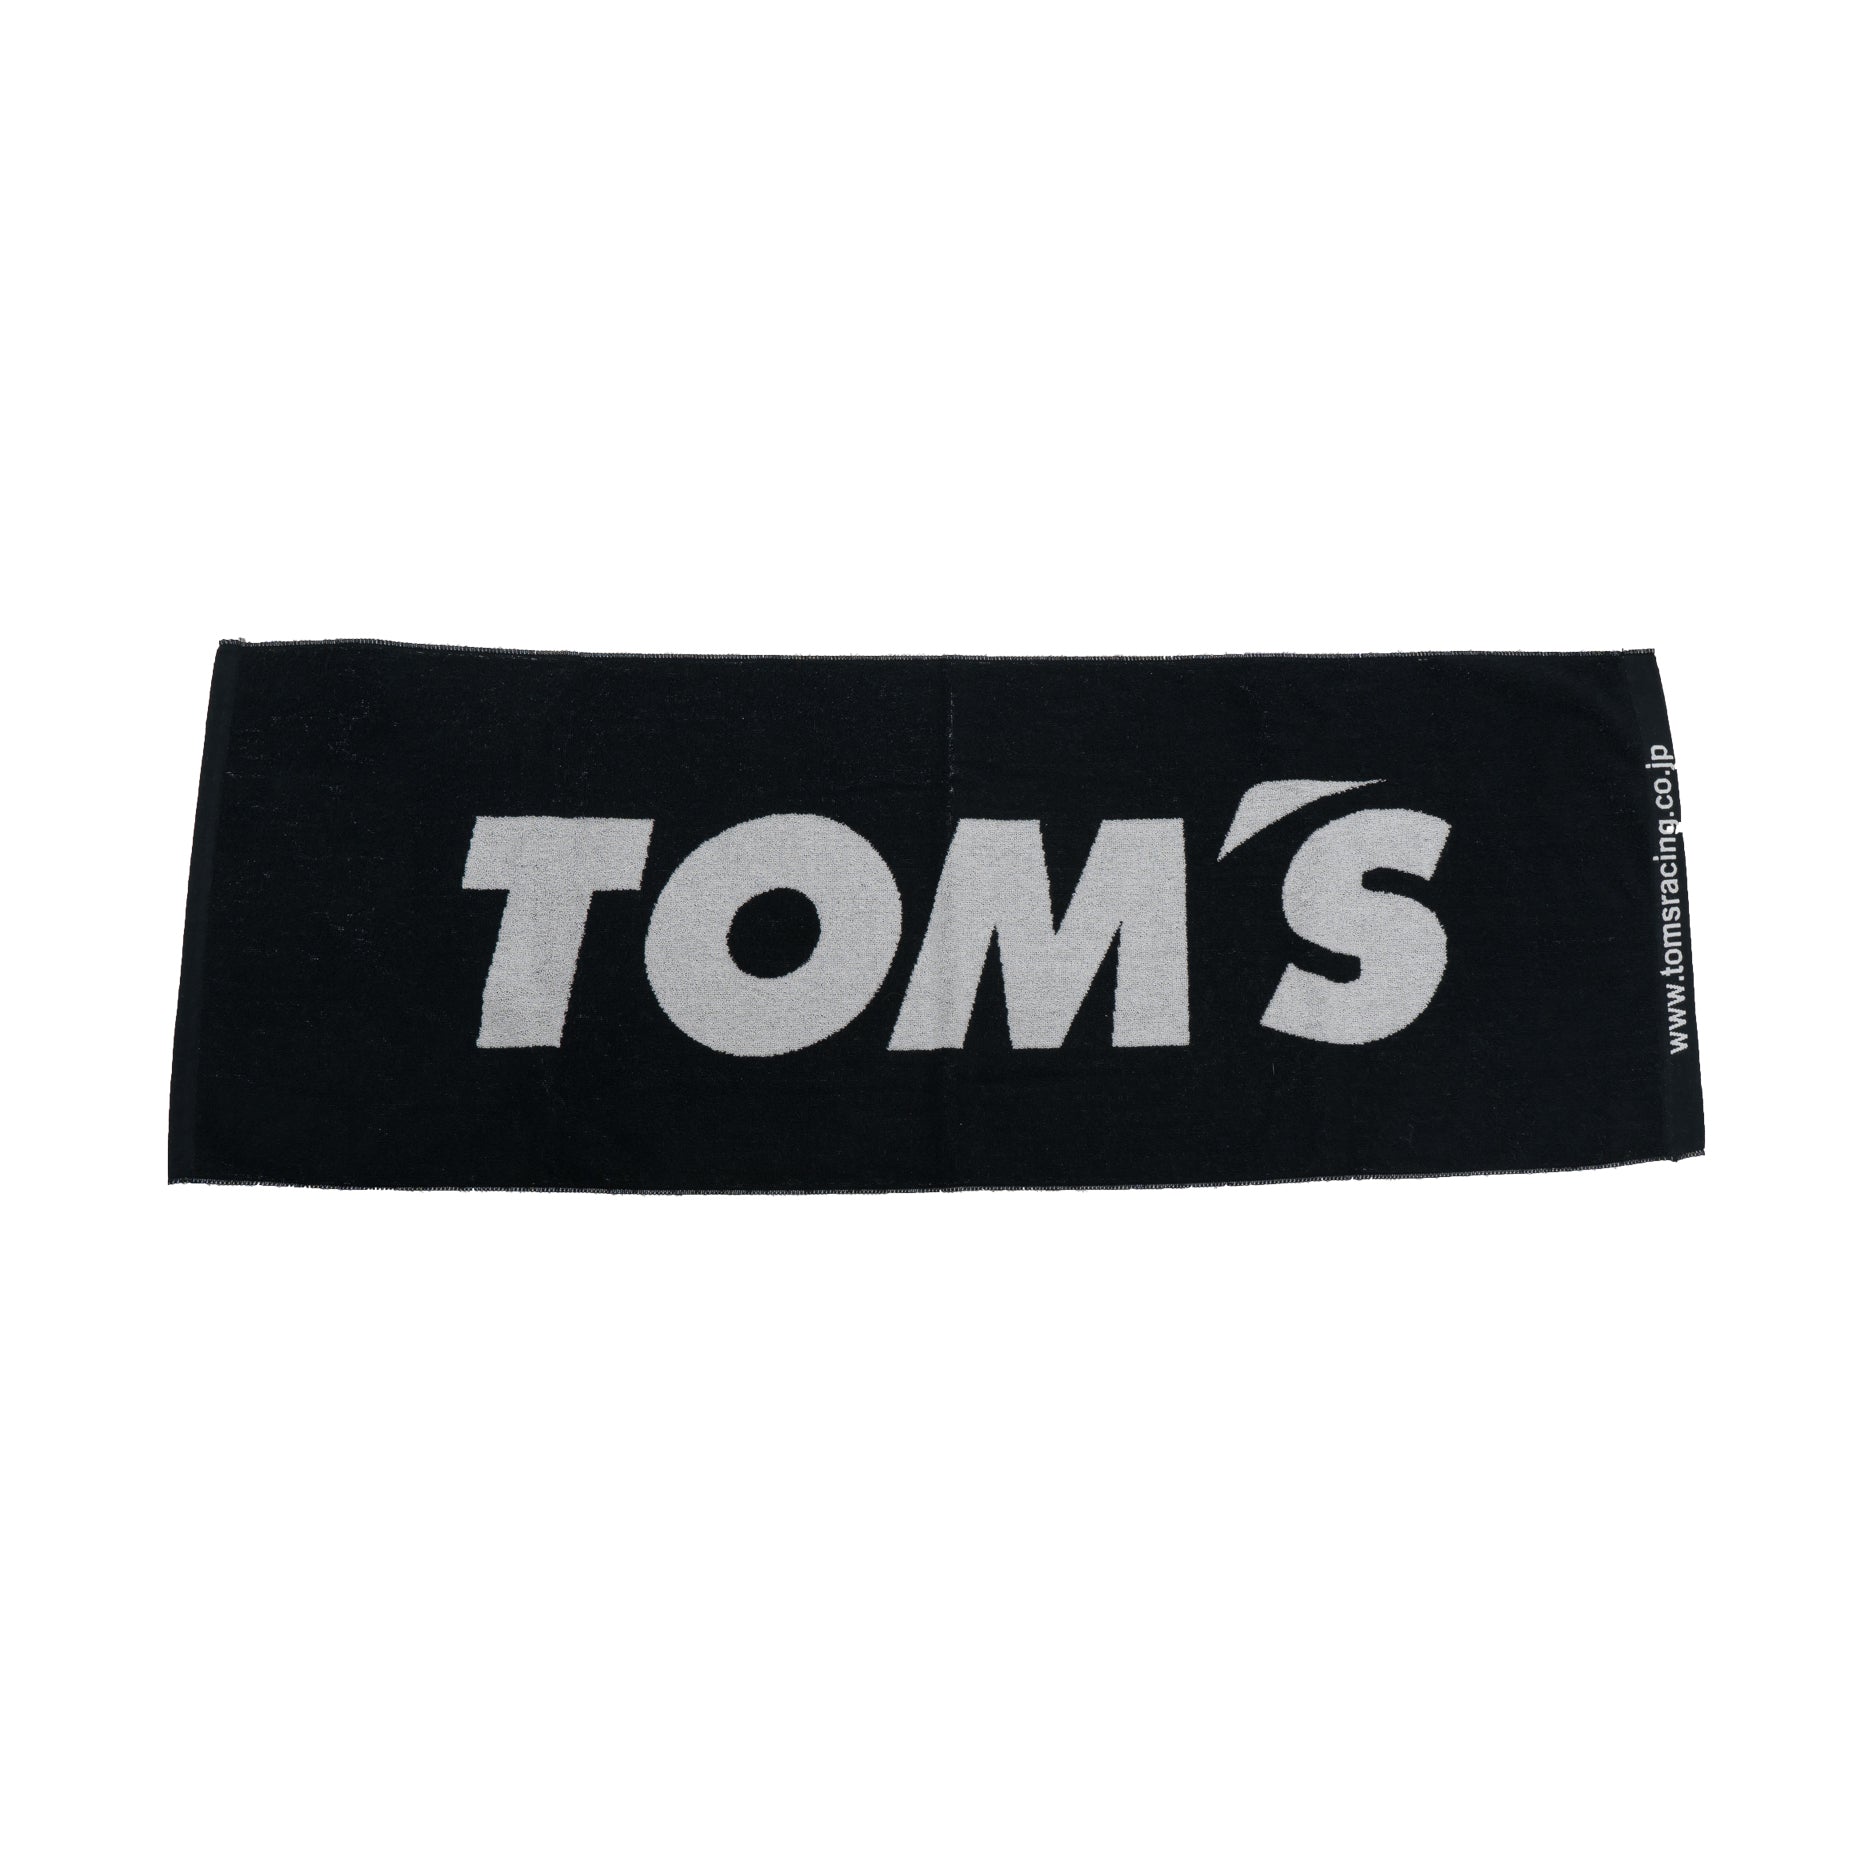 TOM'S Racing - Team Towel